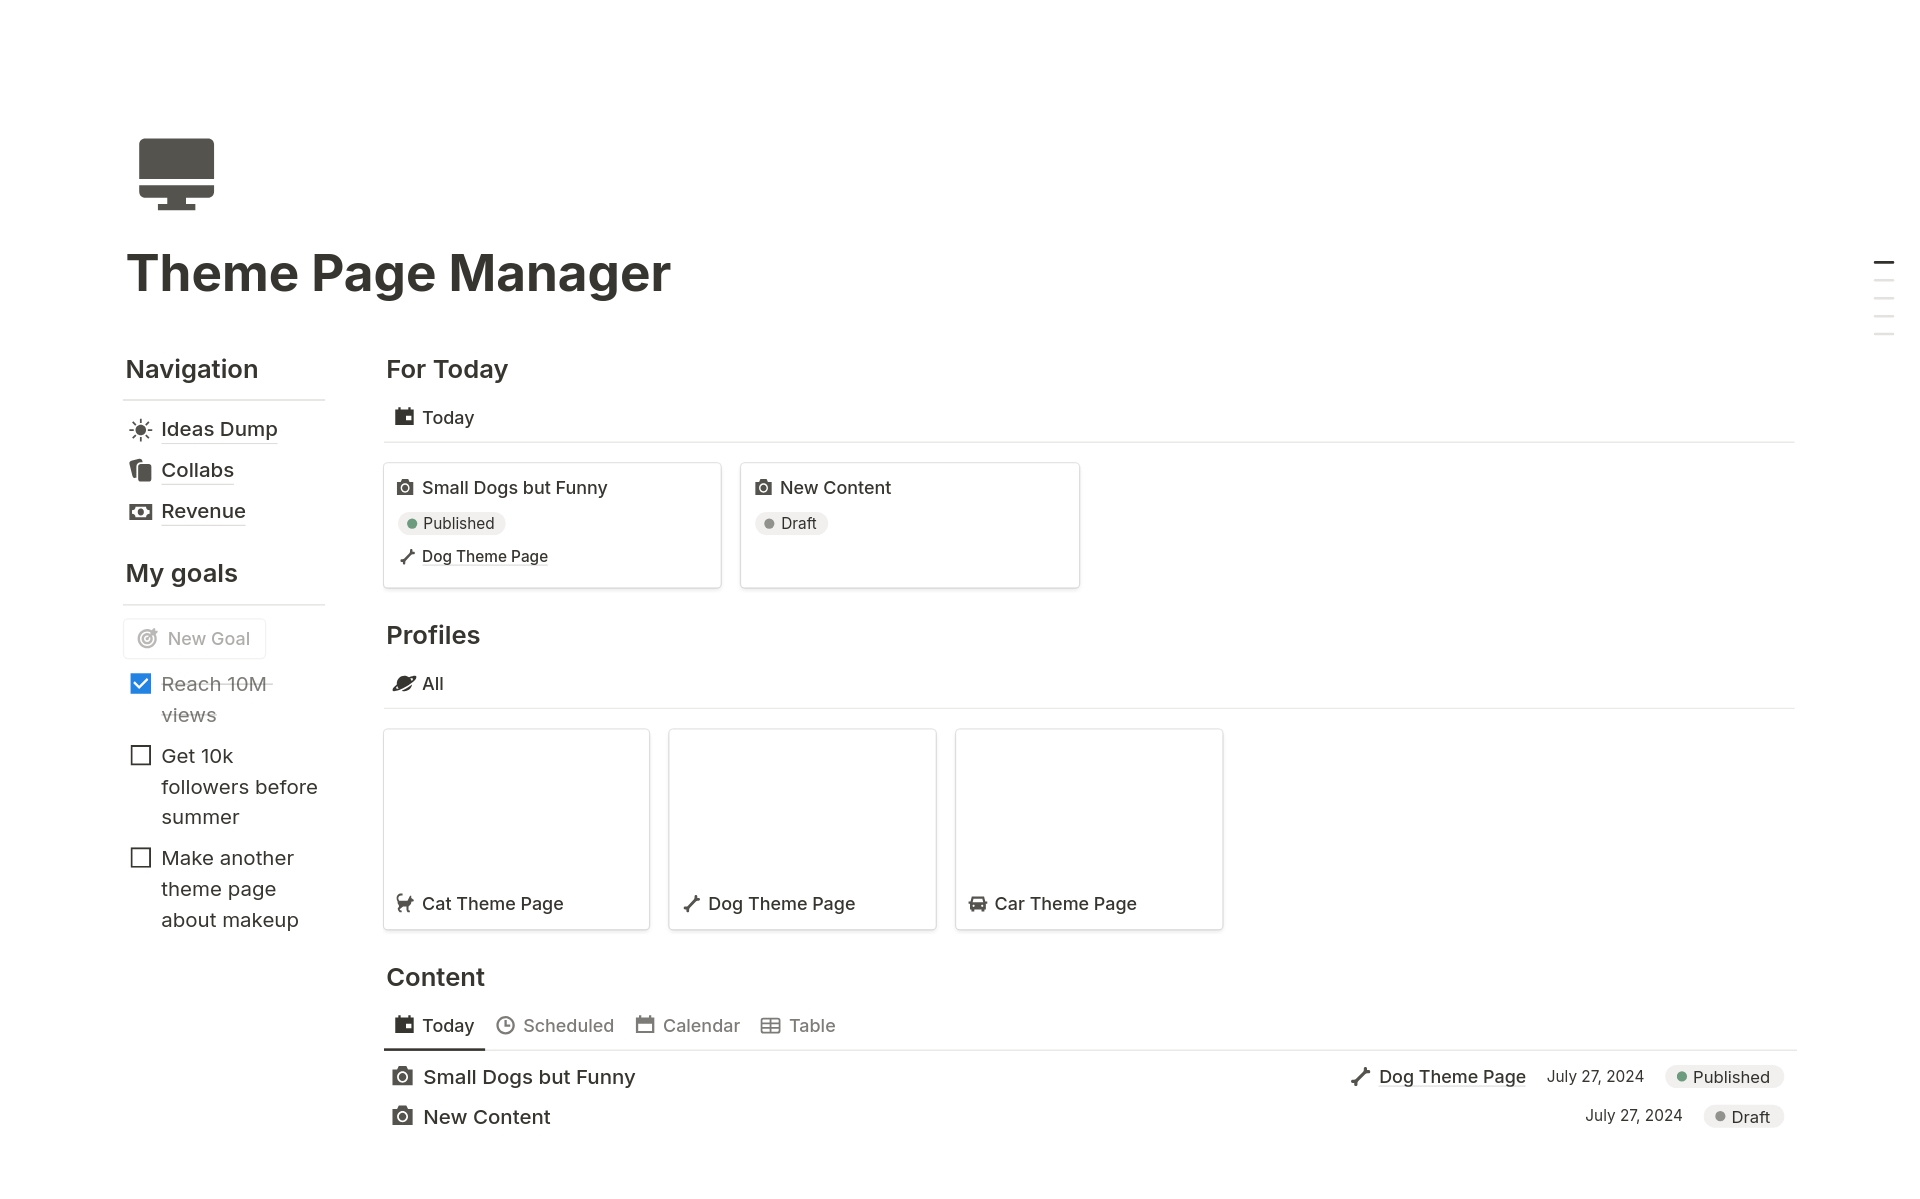 Vista previa de una plantilla para Theme Page Manager